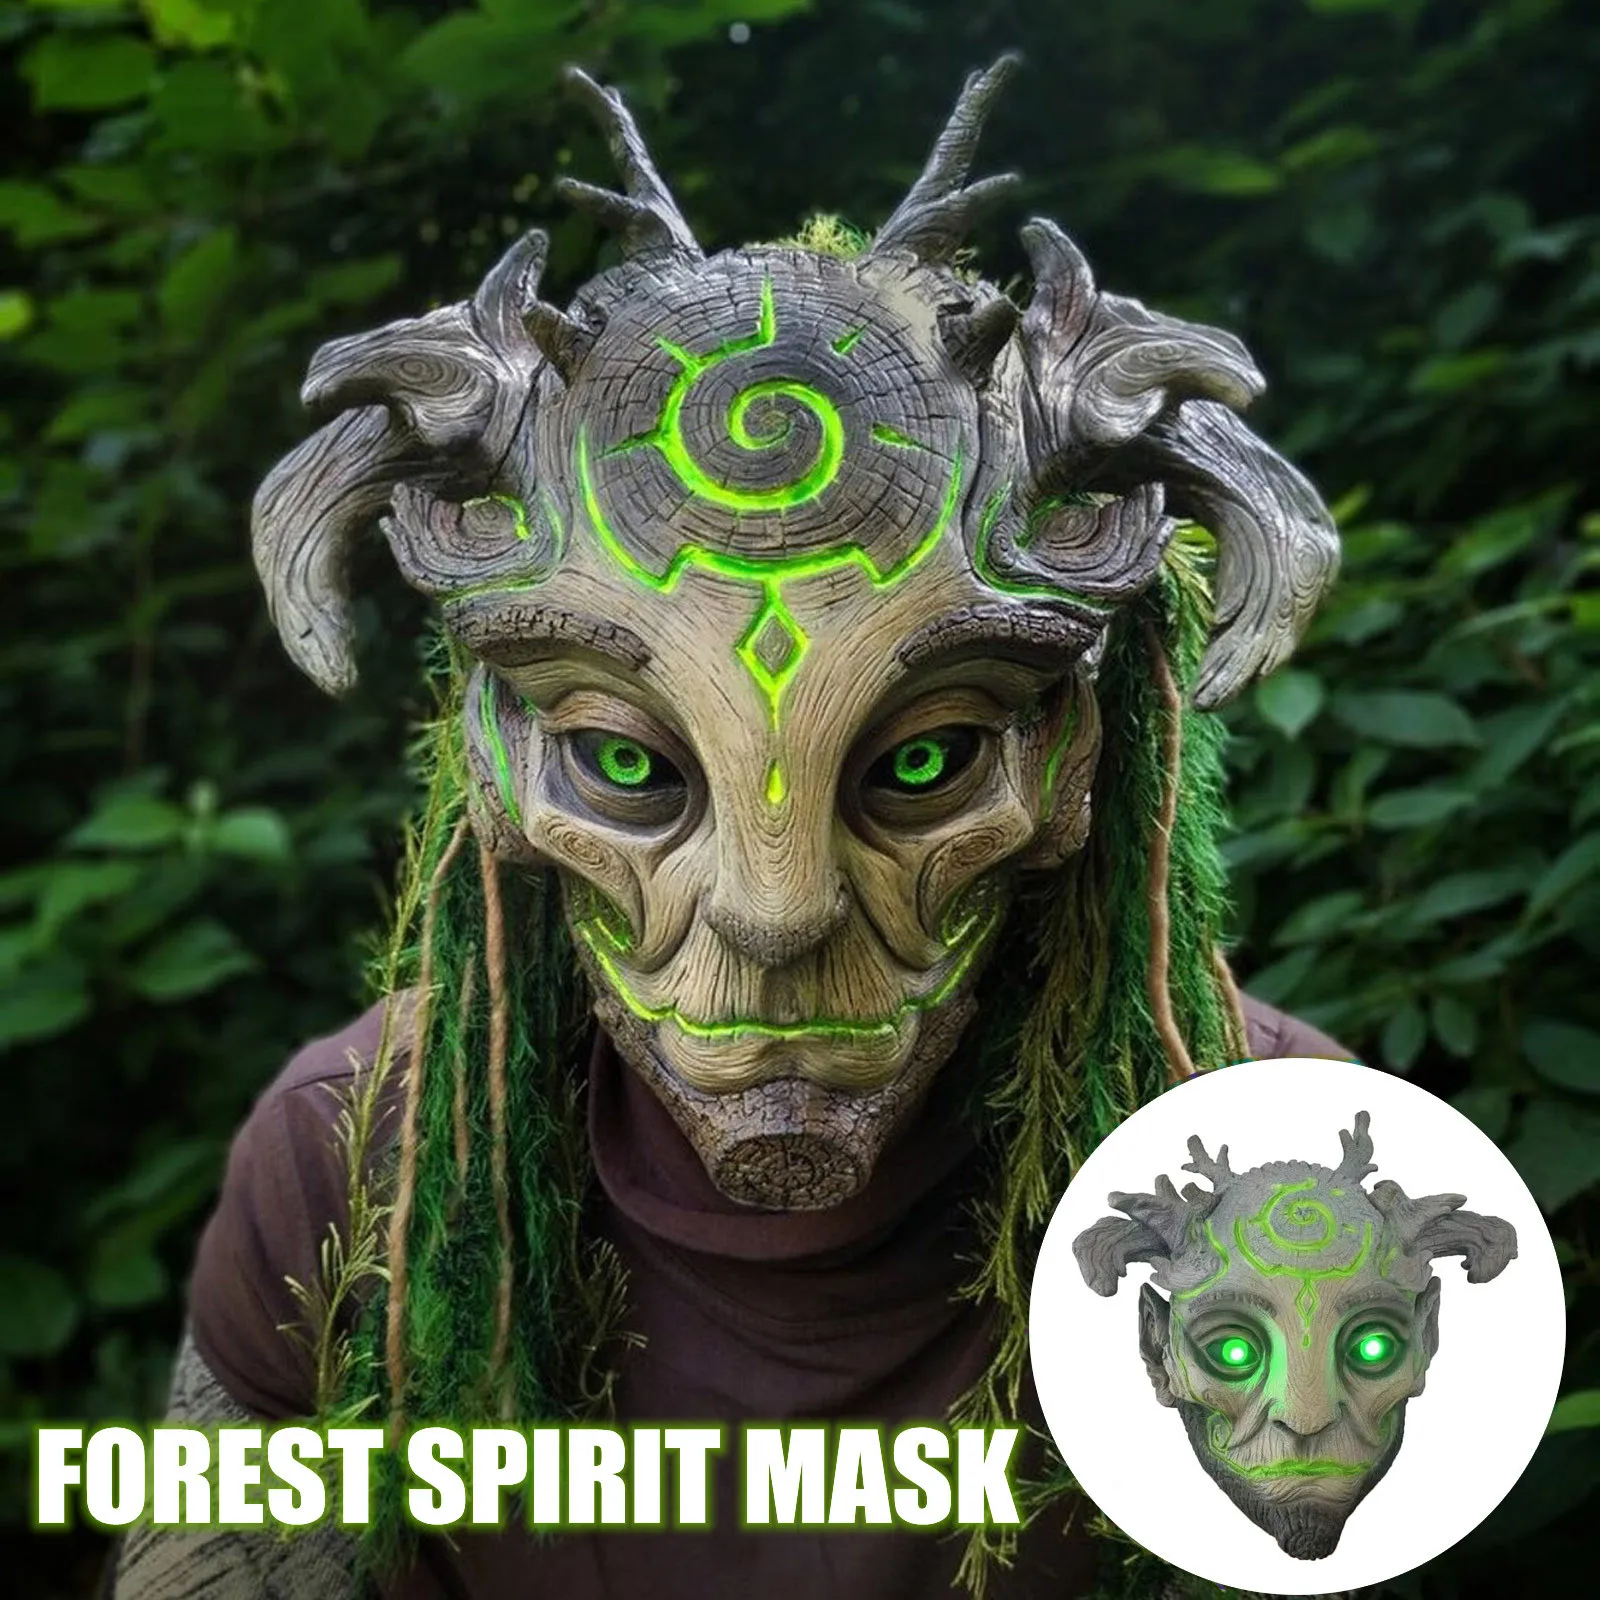 

Лесной эльф, маска-хранитель, светящаяся, для Хэллоуина, игрушка, ужас, лицо дерева, зеленые глаза, фотография, шлем, реквизит для карнавала